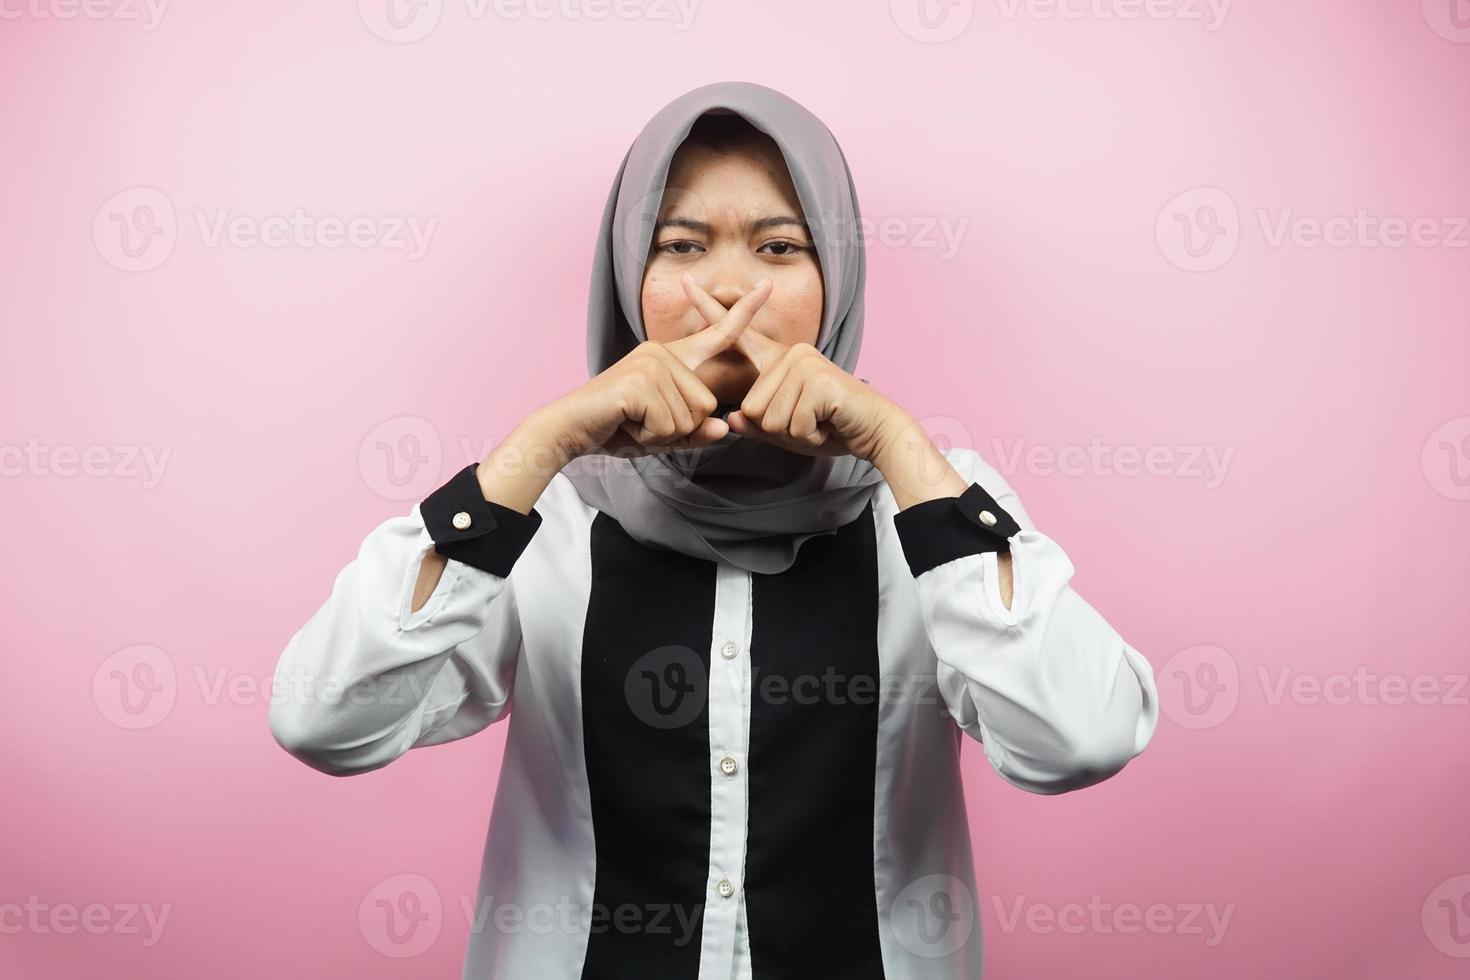 schöne asiatische junge muslimische frau mit finger auf dem mund, die sagt, sie solle leise sein, keinen lärm machen, die stimme senken, nicht sprechen, einzeln auf rosa hintergrund foto